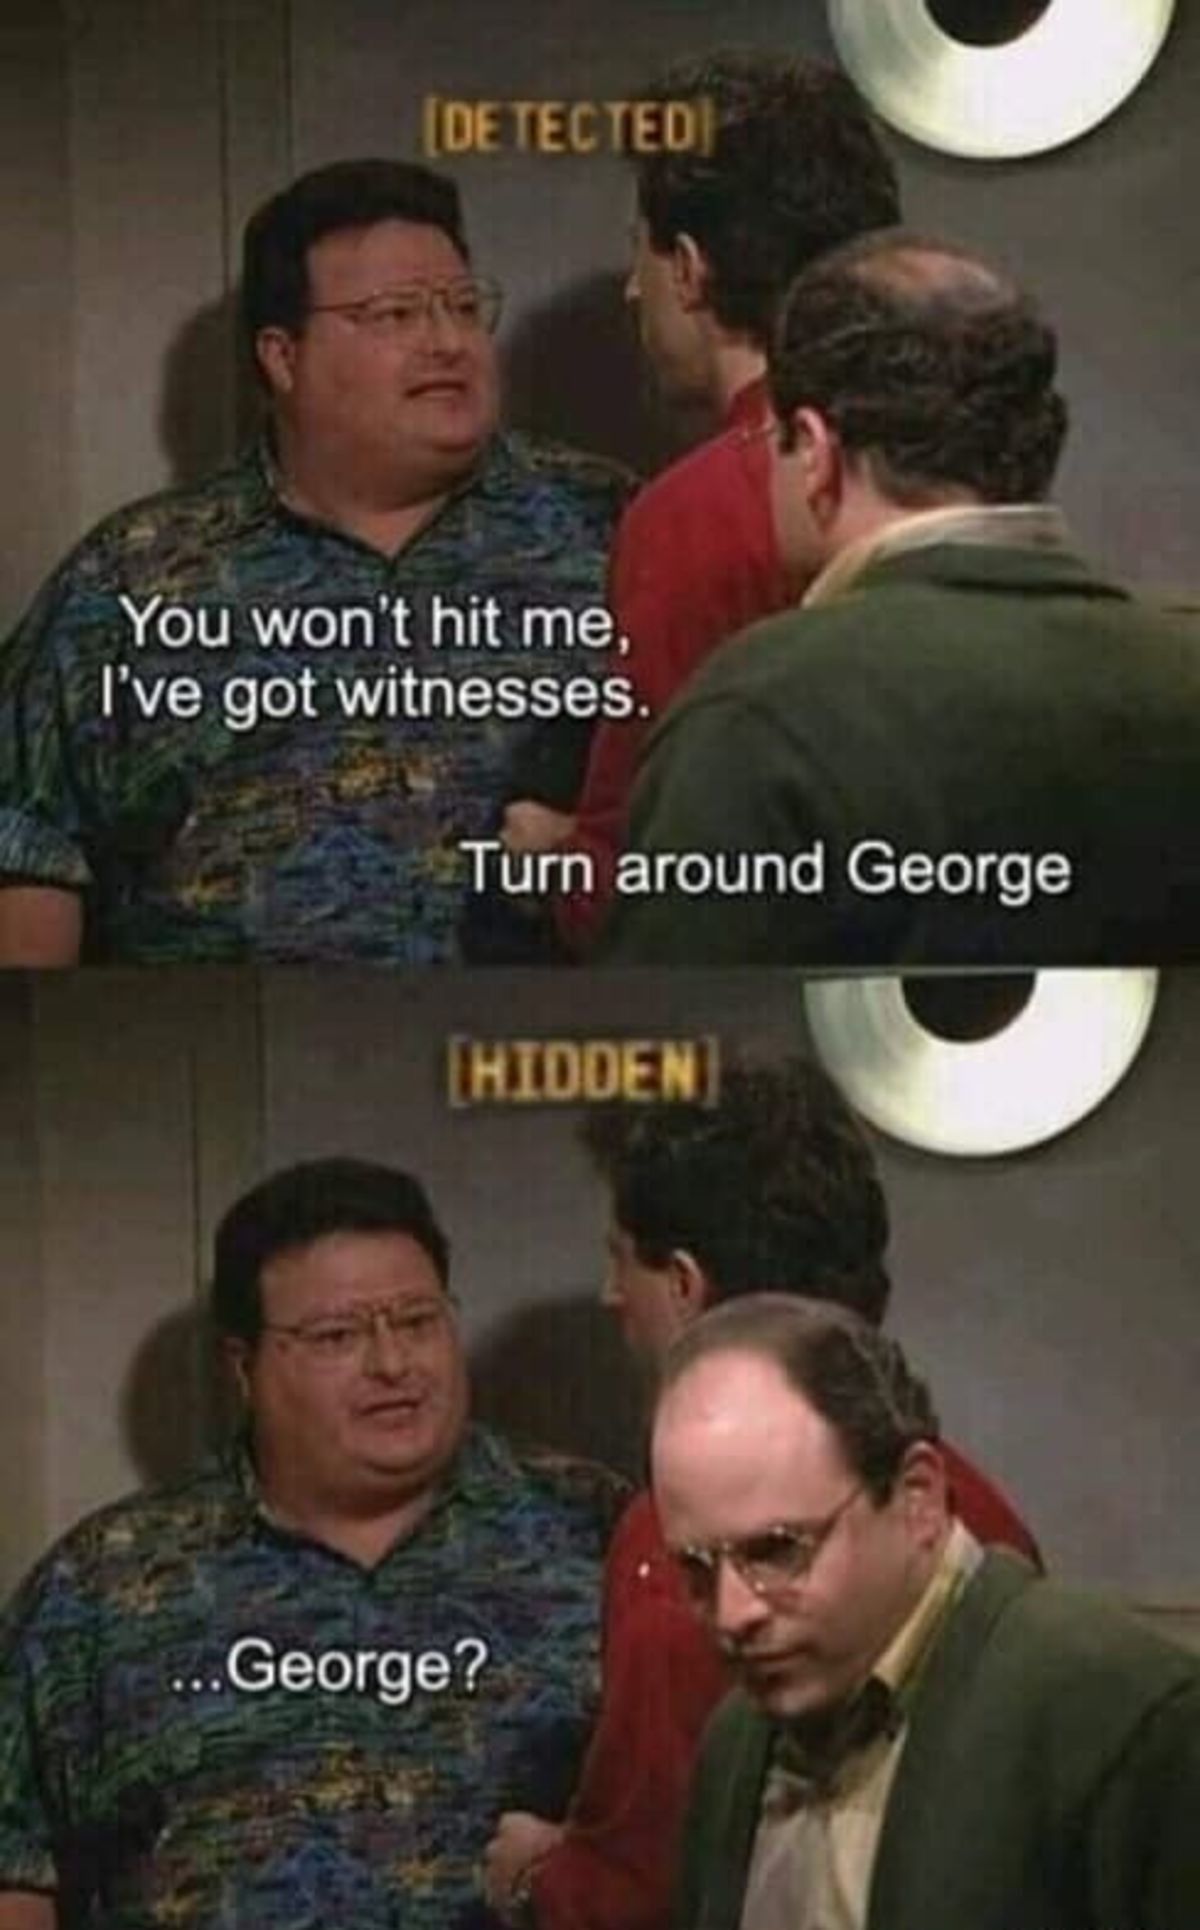 George ain't no snitch